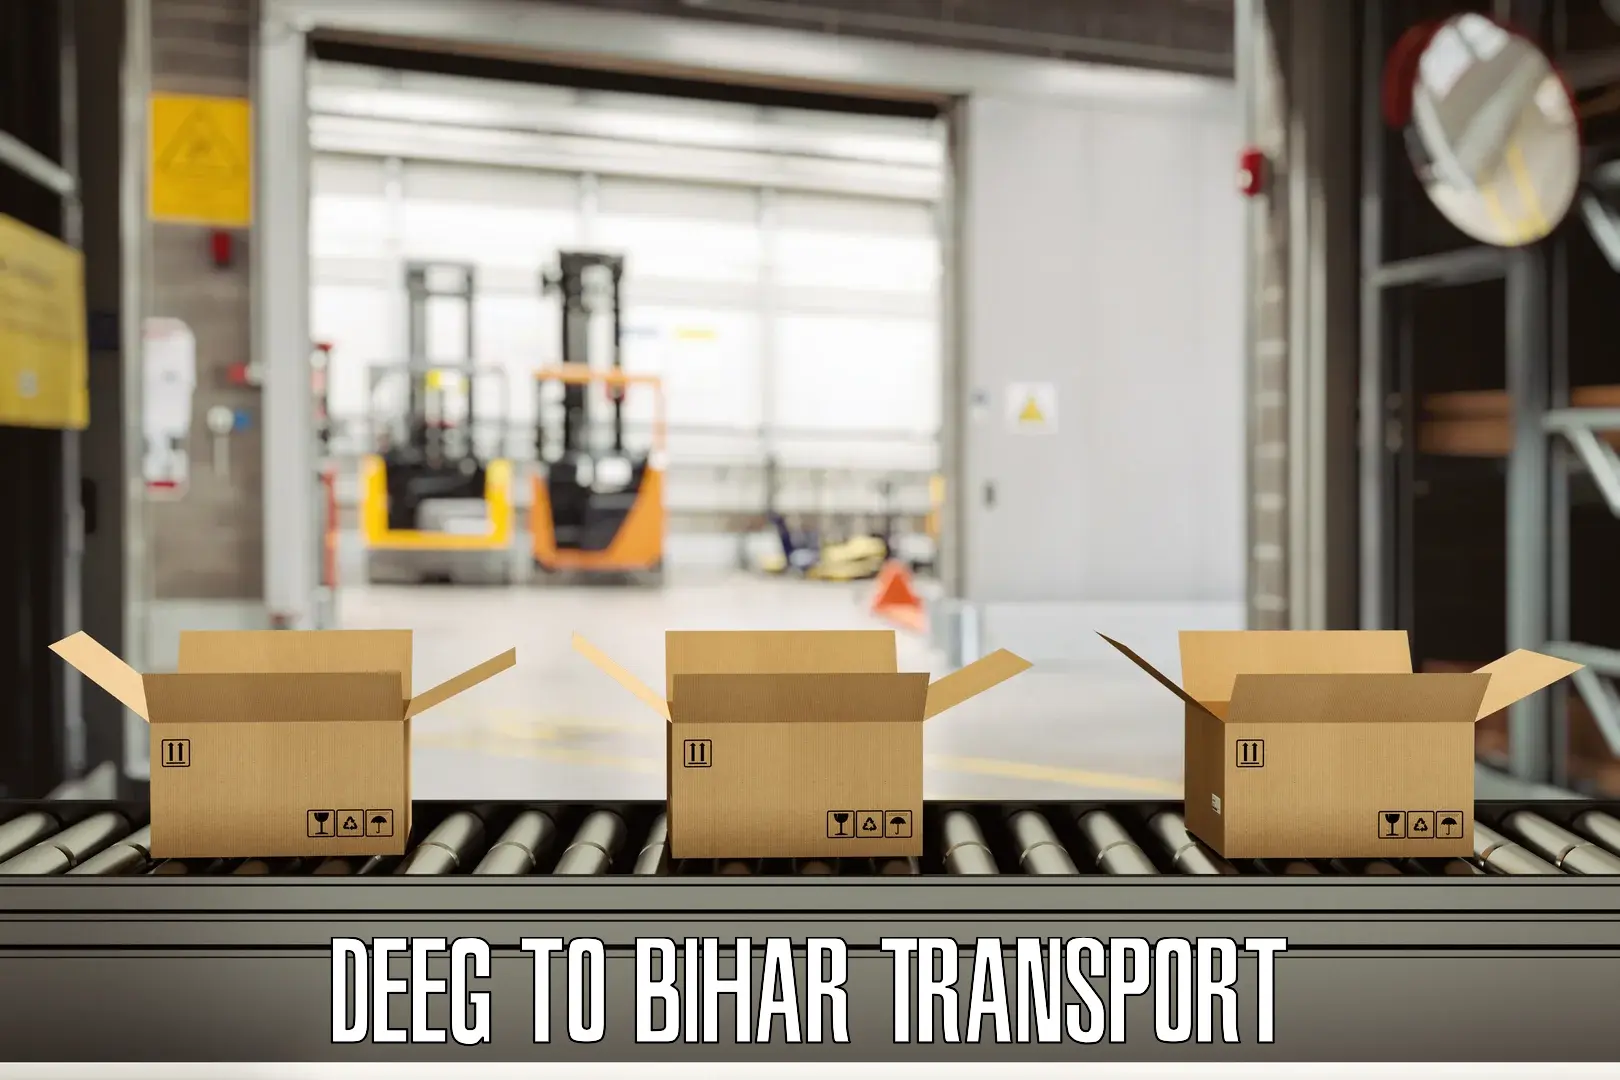 Vehicle transport services Deeg to Saran